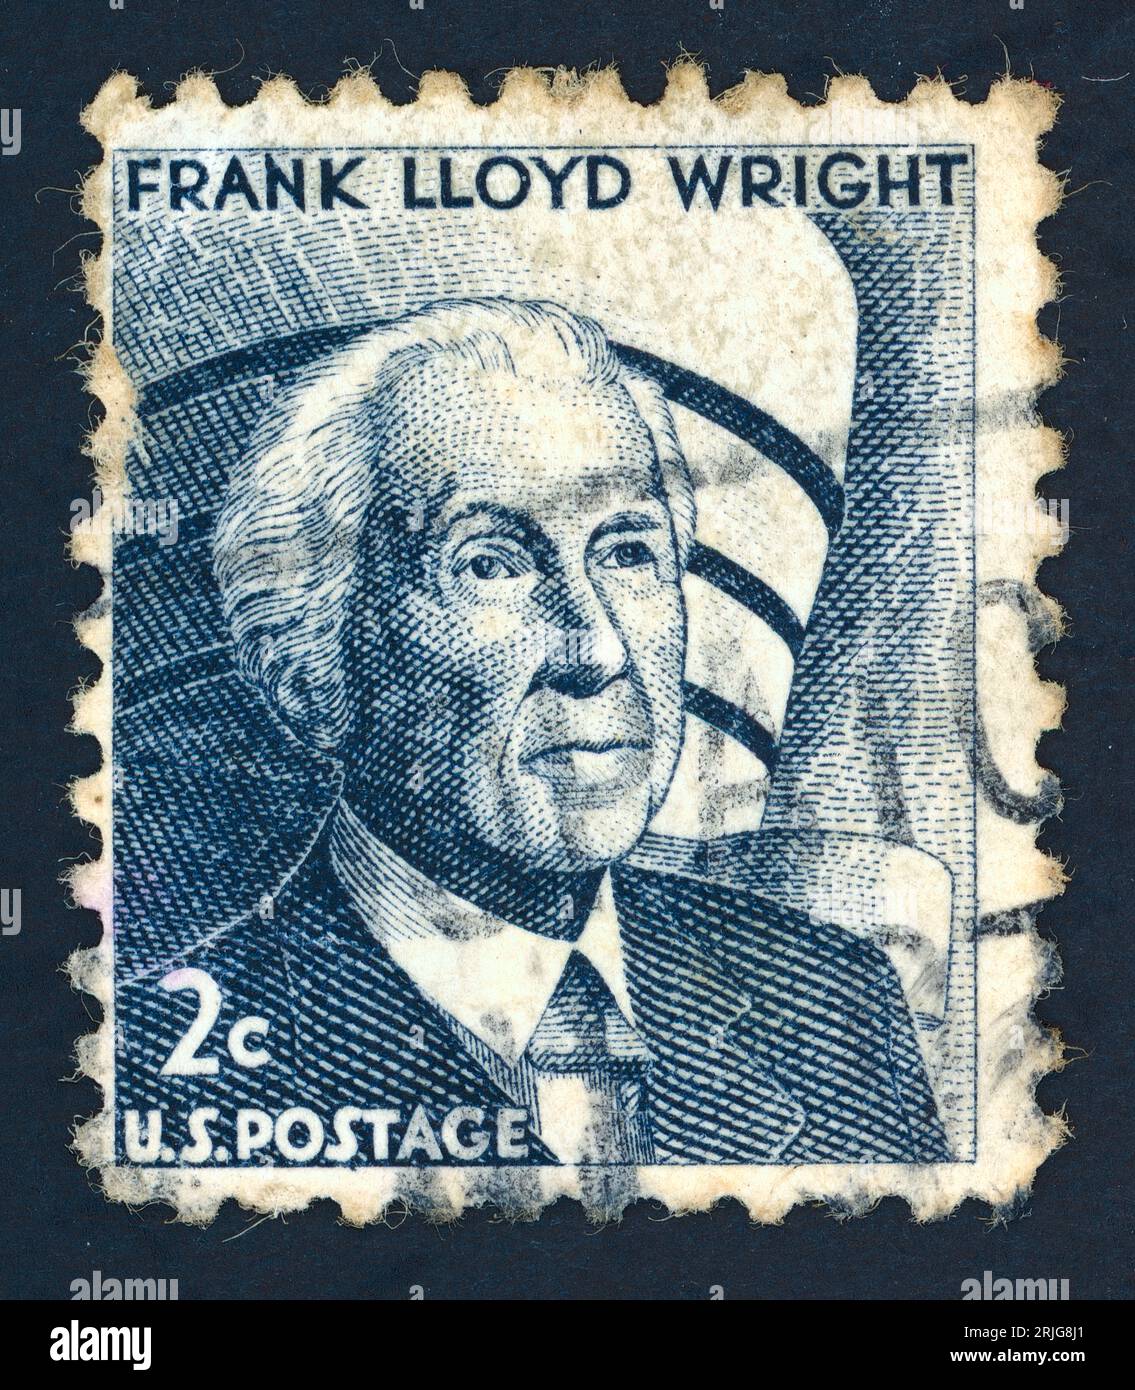 Frank Lloyd Wright (1867–1959). Briefmarke, die 1966 in den USA ausgestellt wurde. Frank Lloyd Wright war Architekt und Schriftsteller, ein kreativer Meister der amerikanischen Architektur. Sein „Prairie-Stil“ wurde zur Grundlage des Wohndesigns im 20. Jahrhundert in den Vereinigten Staaten. Stockfoto